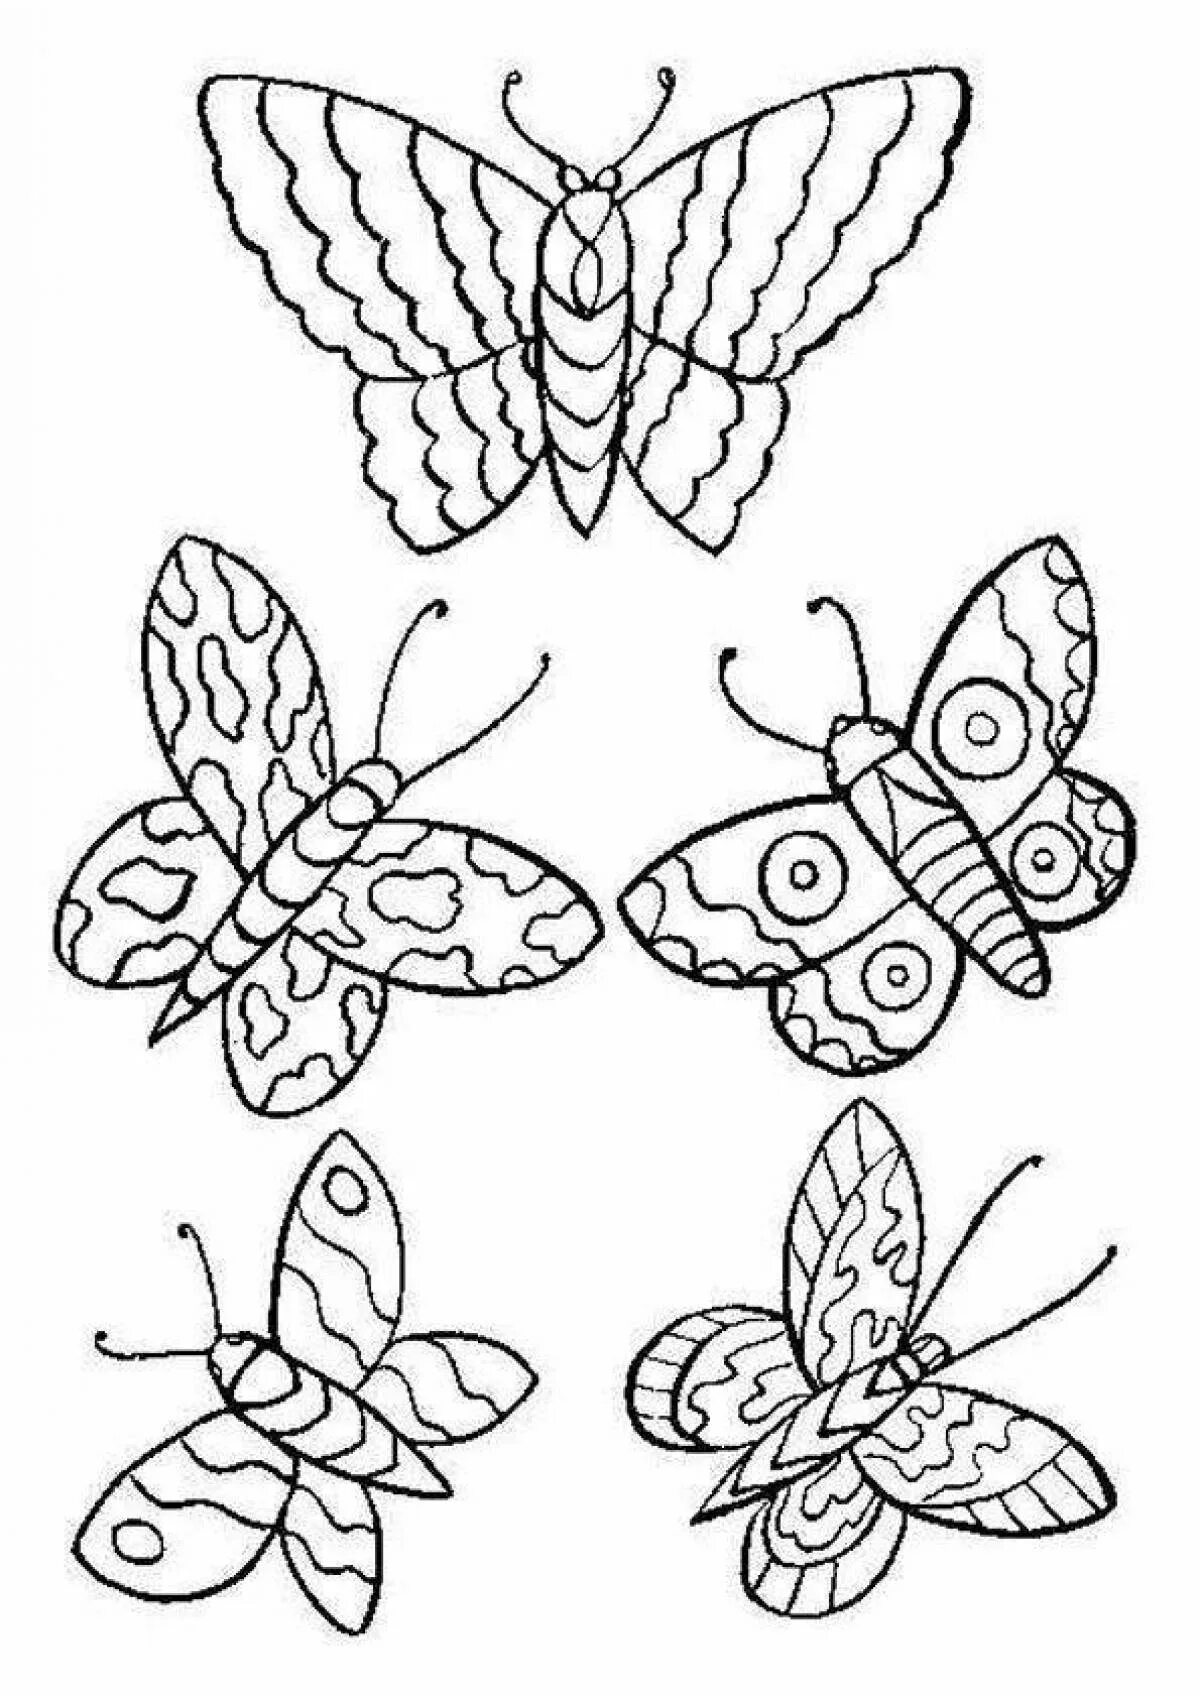 Раскраска на 6 листов. Бабочка раскраска для детей. Раскраски маленьких бабочек. Бабочка раскраска для малышей. Маленькие бабочки раскраска.